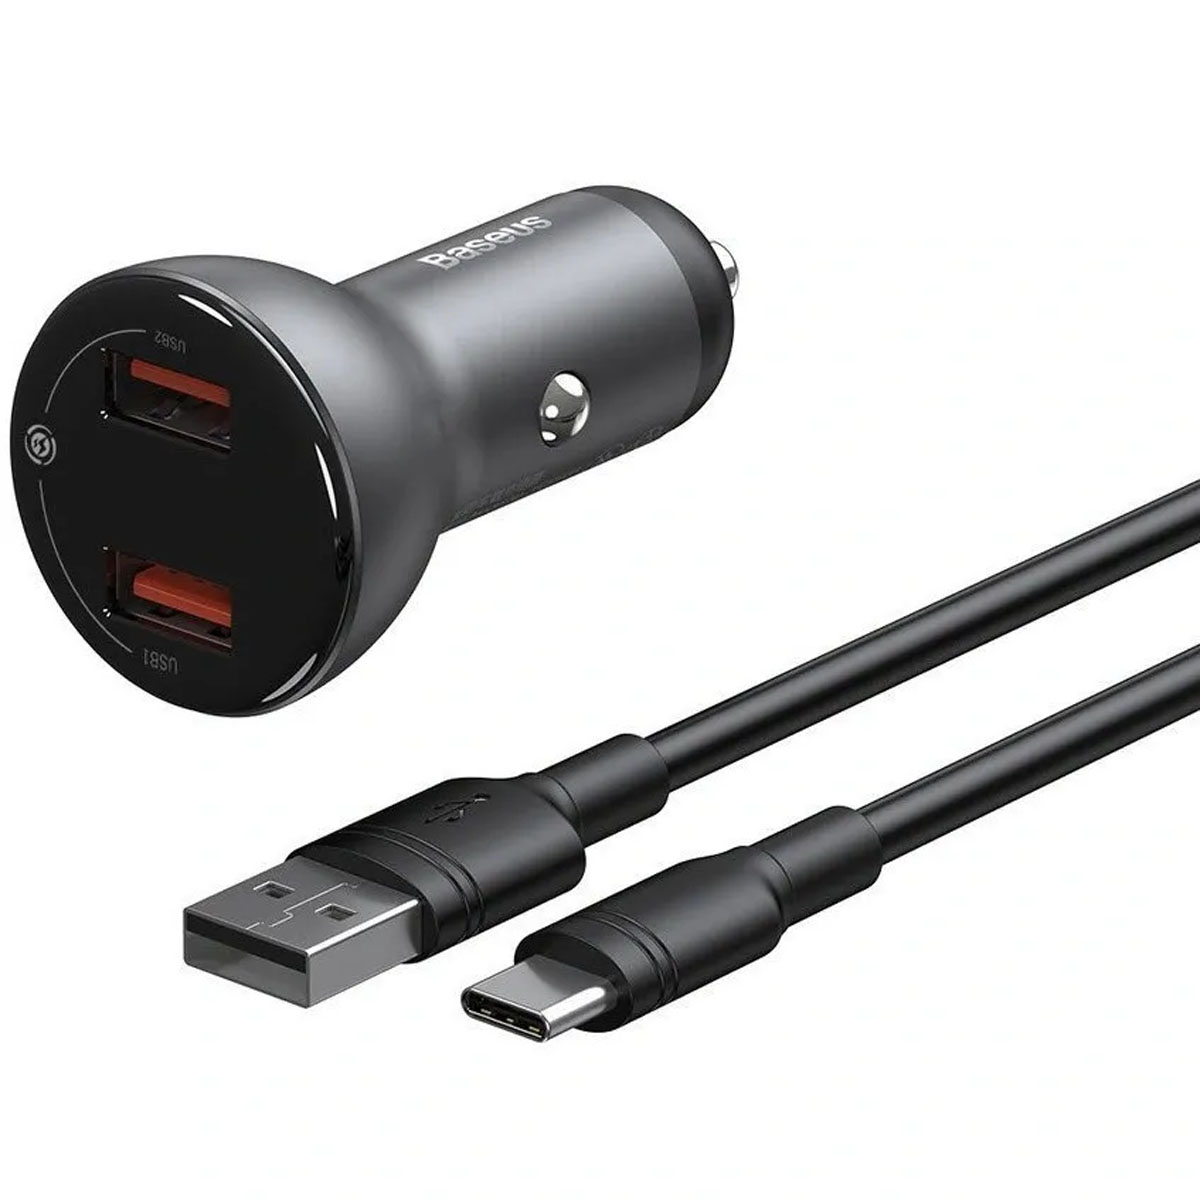 АЗУ (Автомобильное зарядное устройство) BASEUS Digital Display TZCCBX-B0G с кабелем USB Type C, 2 USB, 45W, длина 1 метр, цвет серебристый